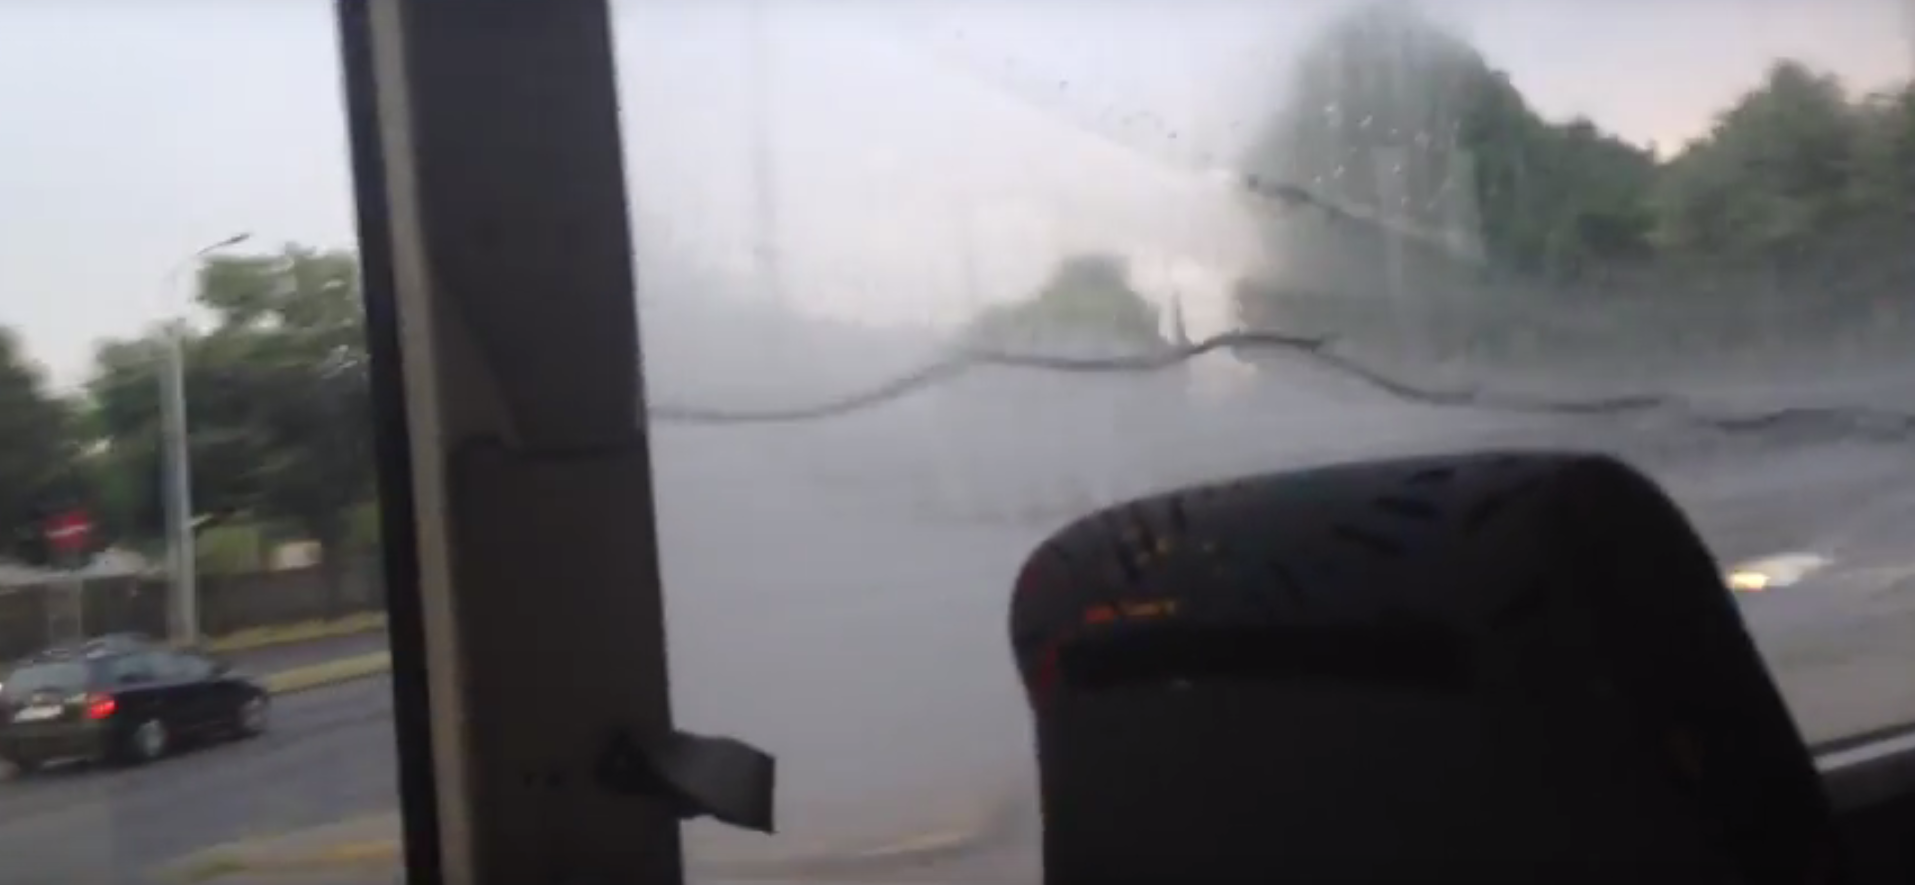 Hullámzott a víz az ablaküveg két rétege között a Volánbusz járatán